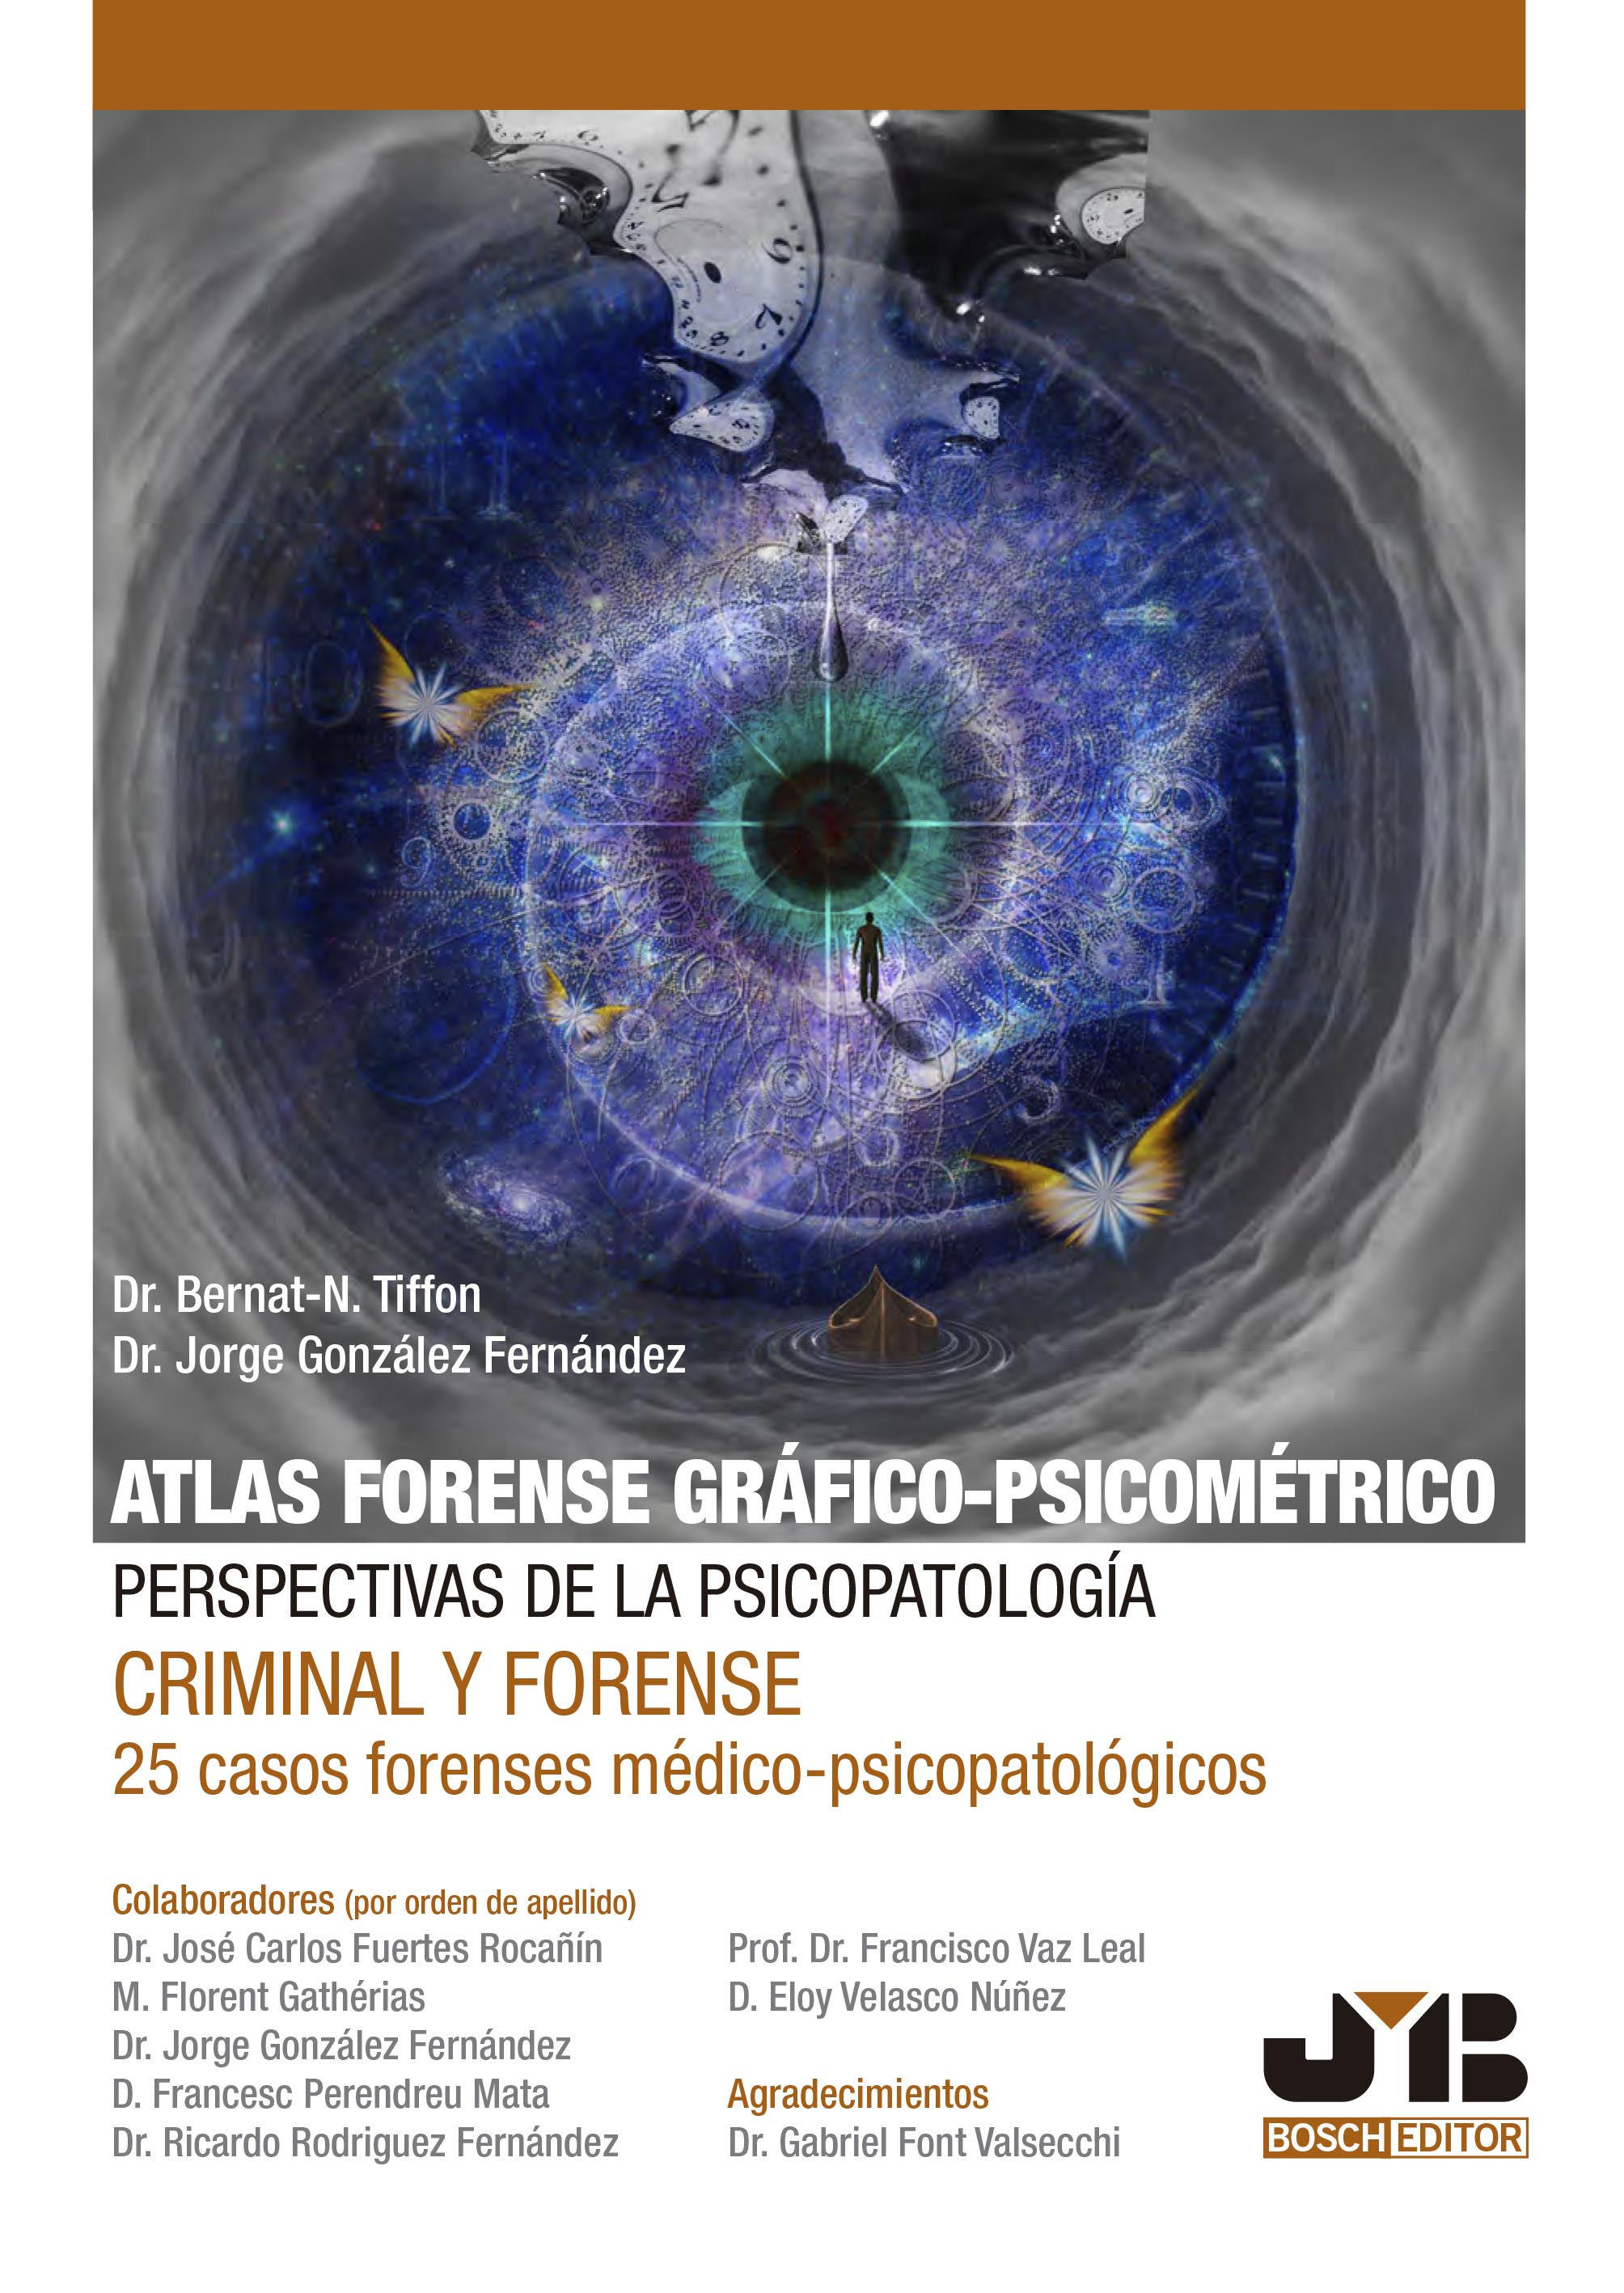 Atlas forense gráfico-psicométrico: perspectivas de la psicopatología criminal y forense. 9788419045188